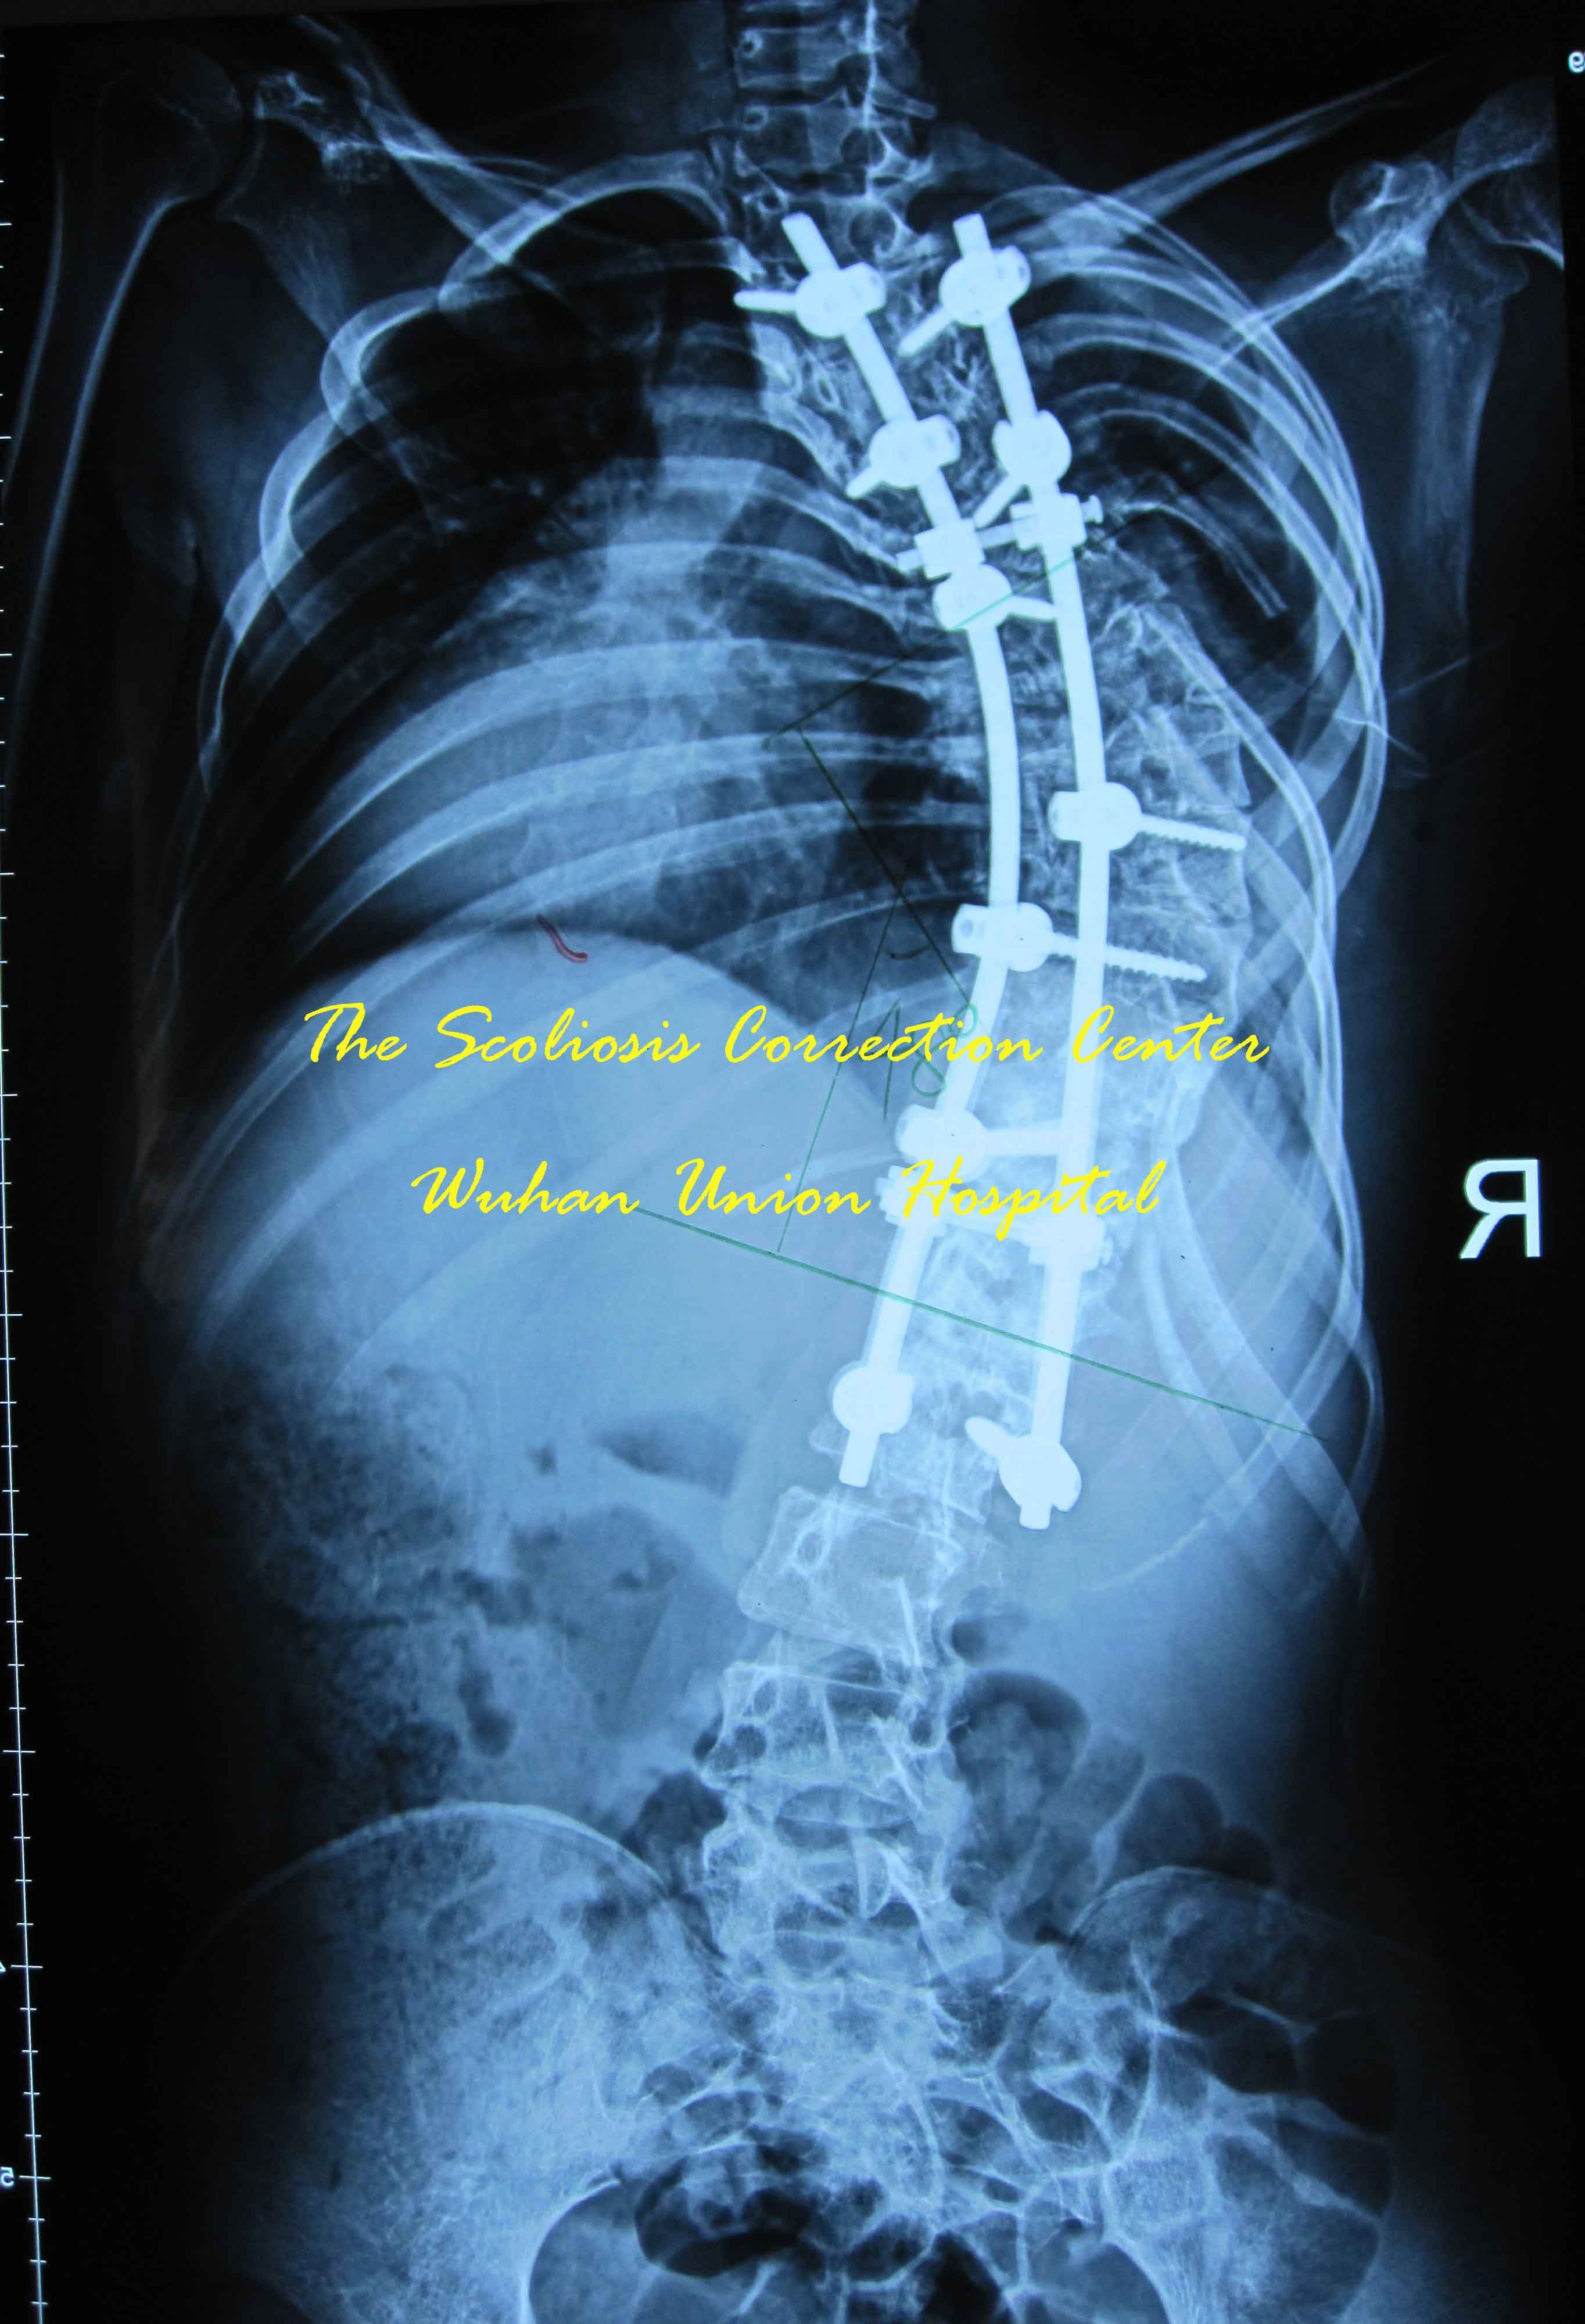 武汉协和医院骨科成功实施极重度脊柱侧凸一期前后路联合矫形